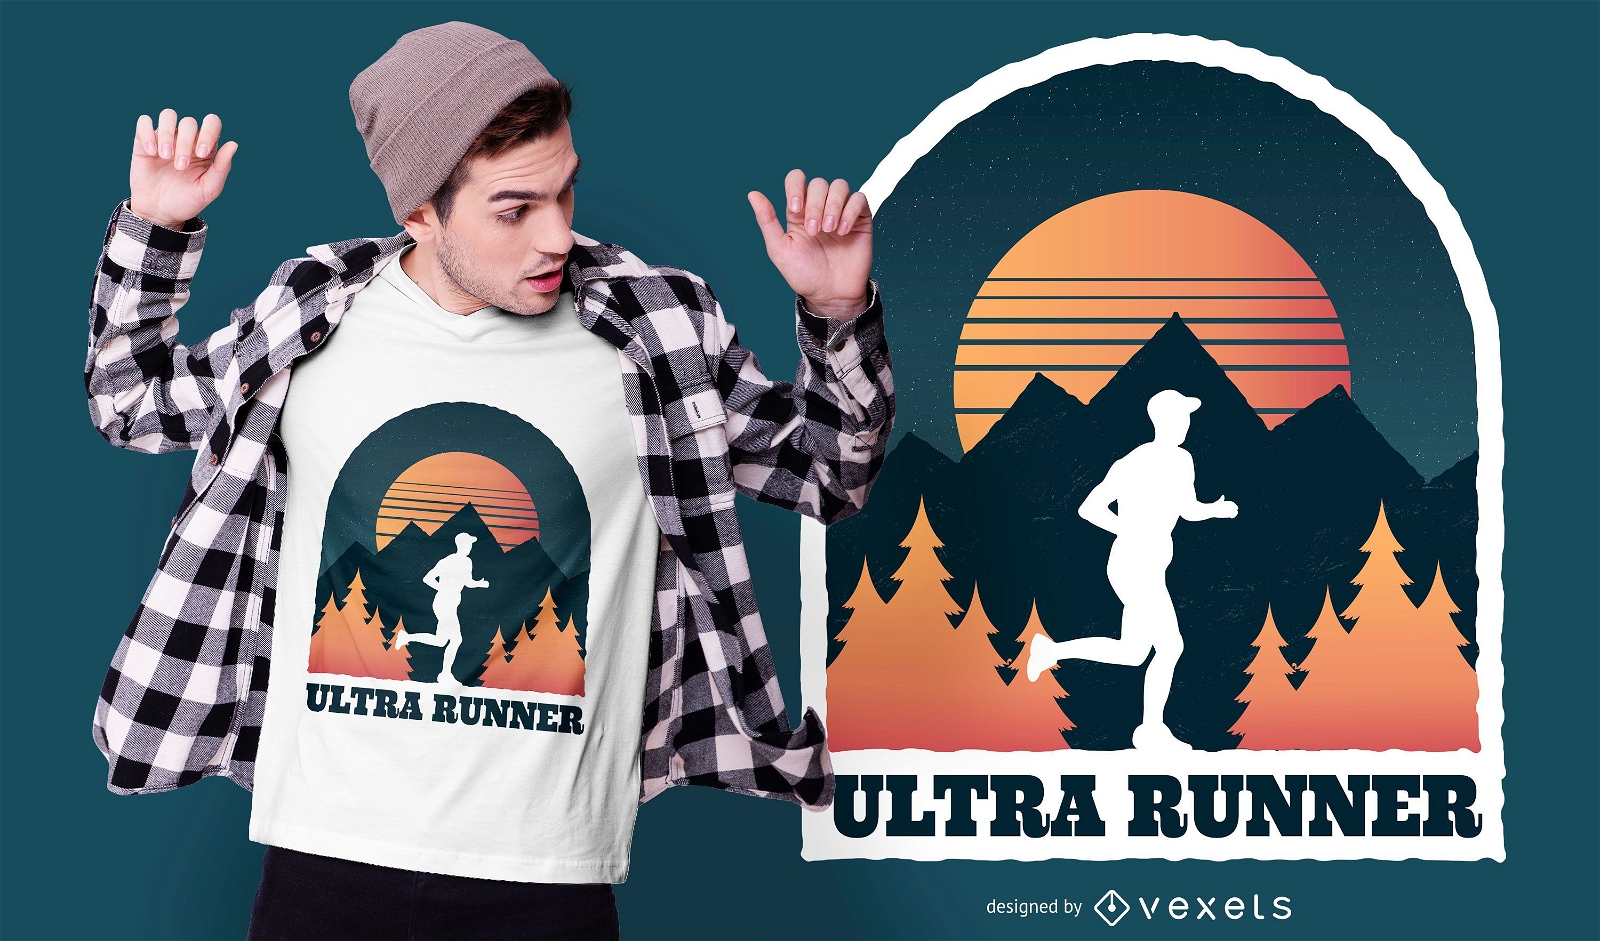 Ultra runner t-shirt design